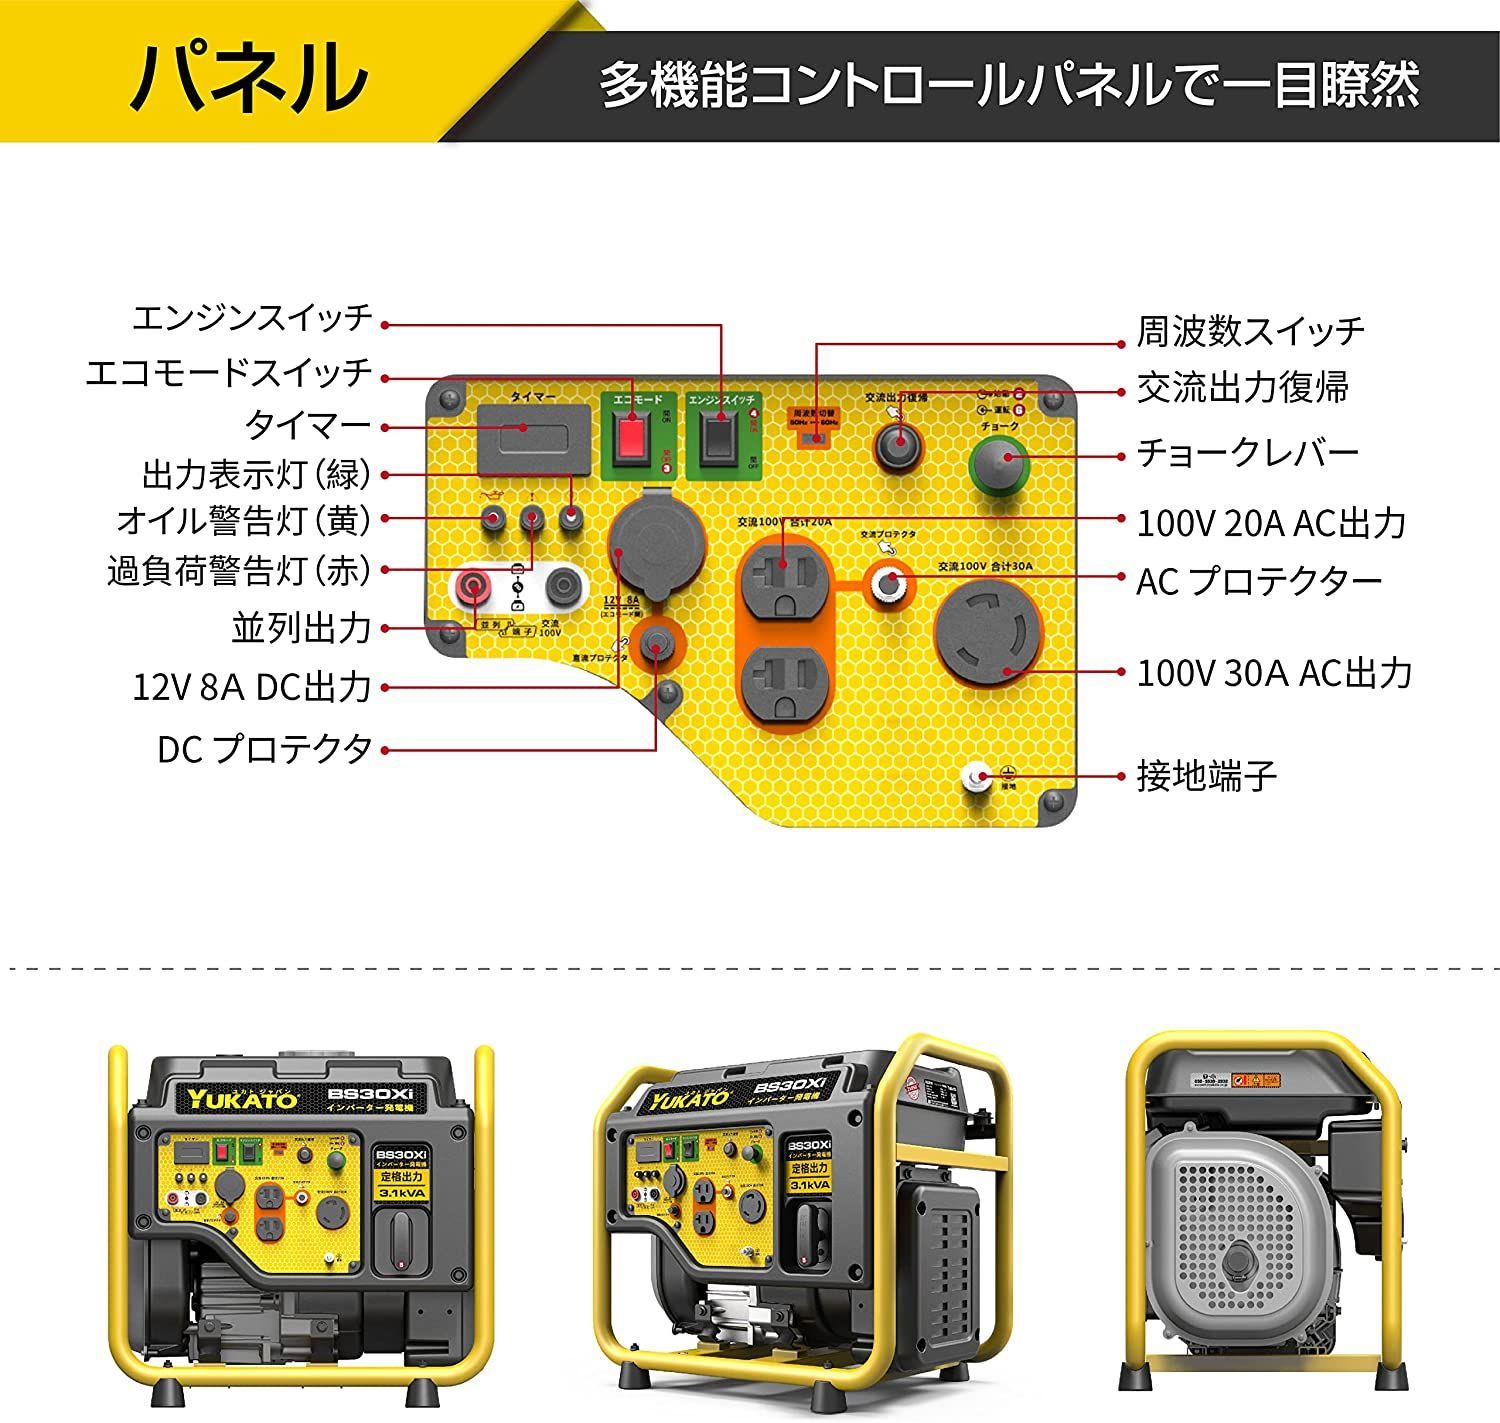 ユカト(YUKATO)インバーター発電機 高性能 定格出力3.0kVA - 生活家電